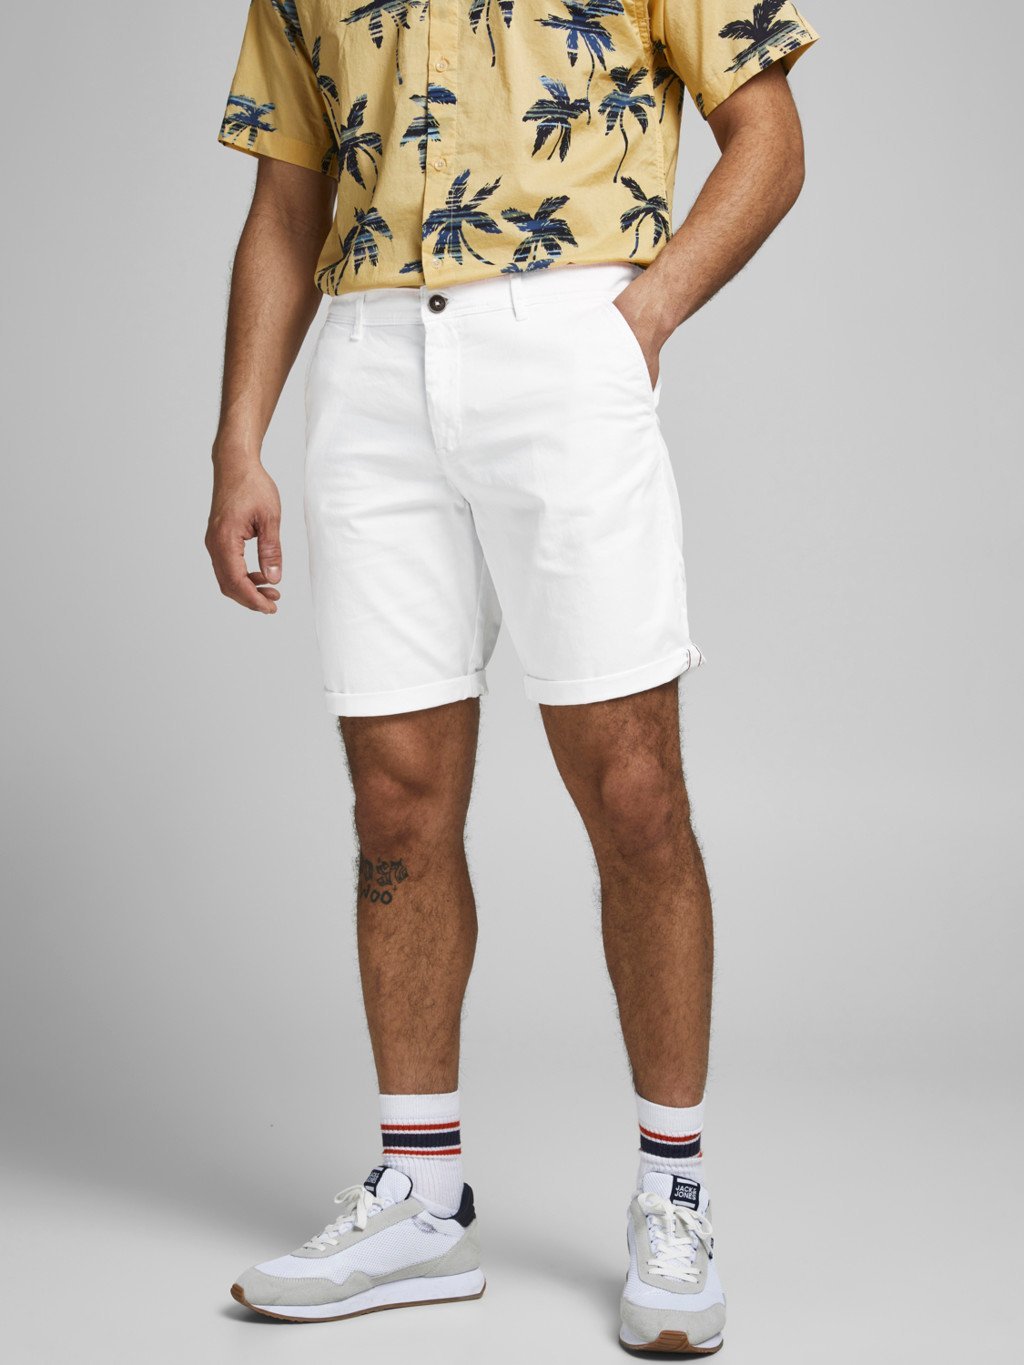 A man wearing white chino shorts